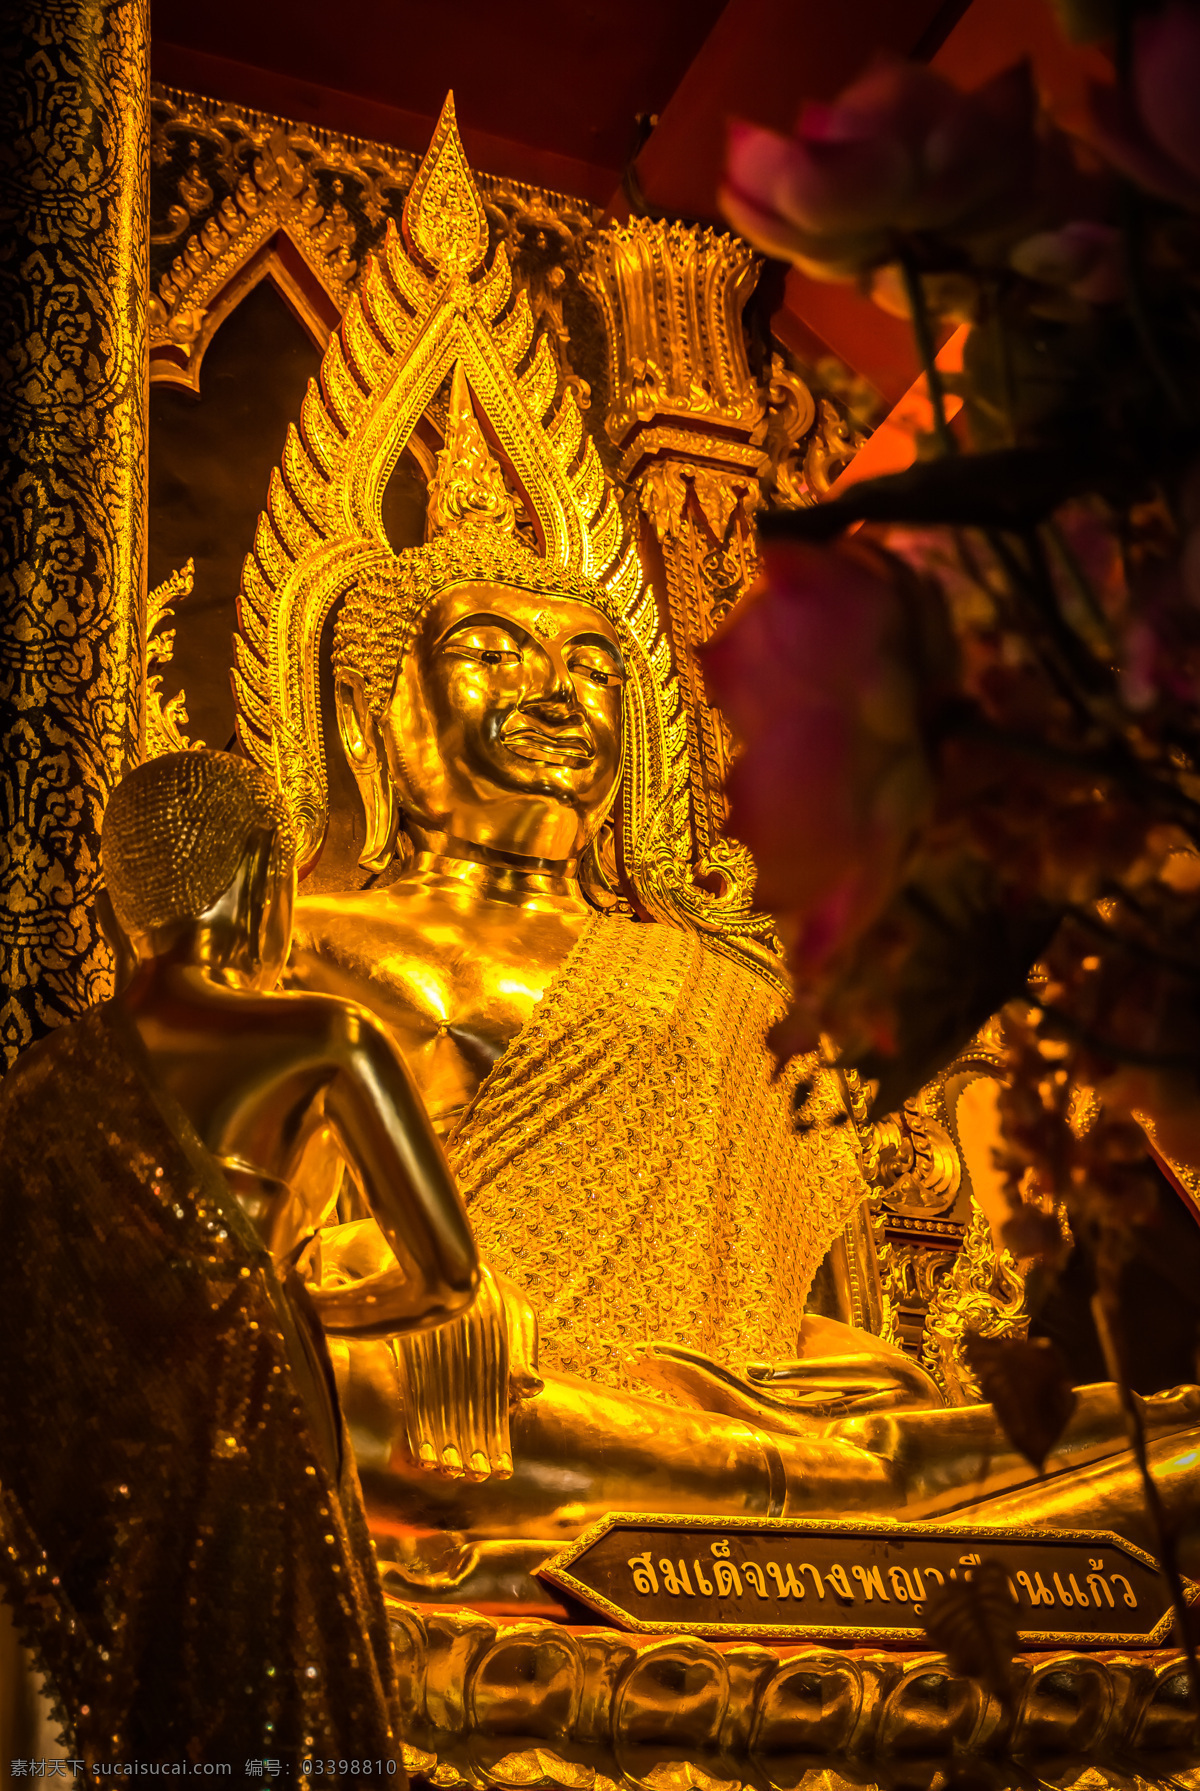 泰国寺庙金佛 泰国 寺庙 金佛 菩萨 曼谷寺庙 佛像 泰国风景 旅游风光 美丽风景 建筑设计 环境家居 黑色